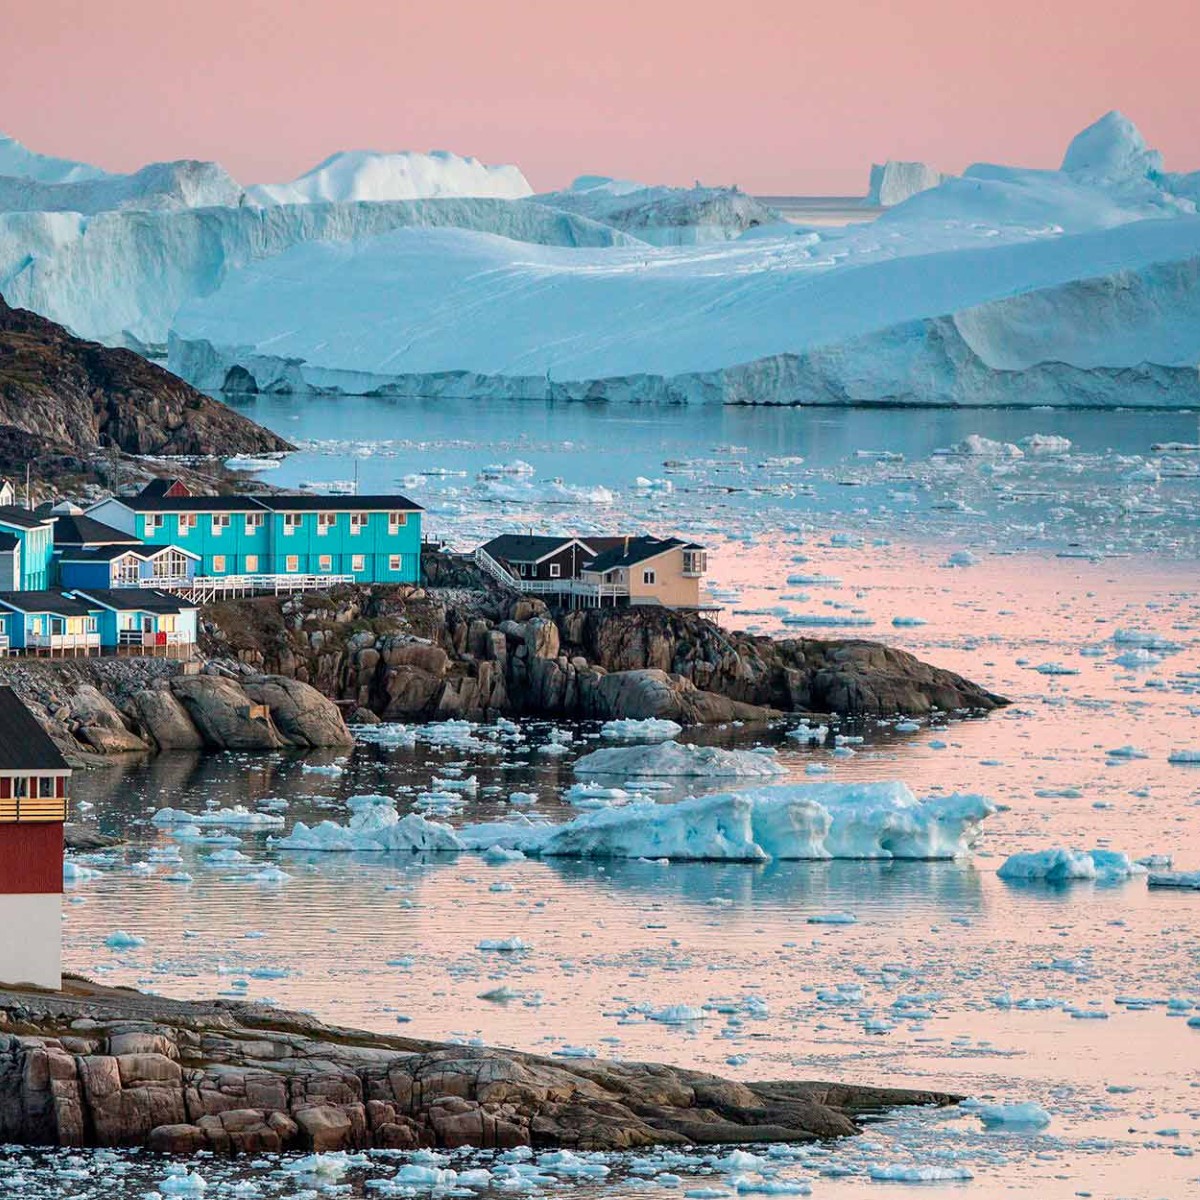 Cruise Greenland's Southwest Coast - From Reykjavik, Iceland